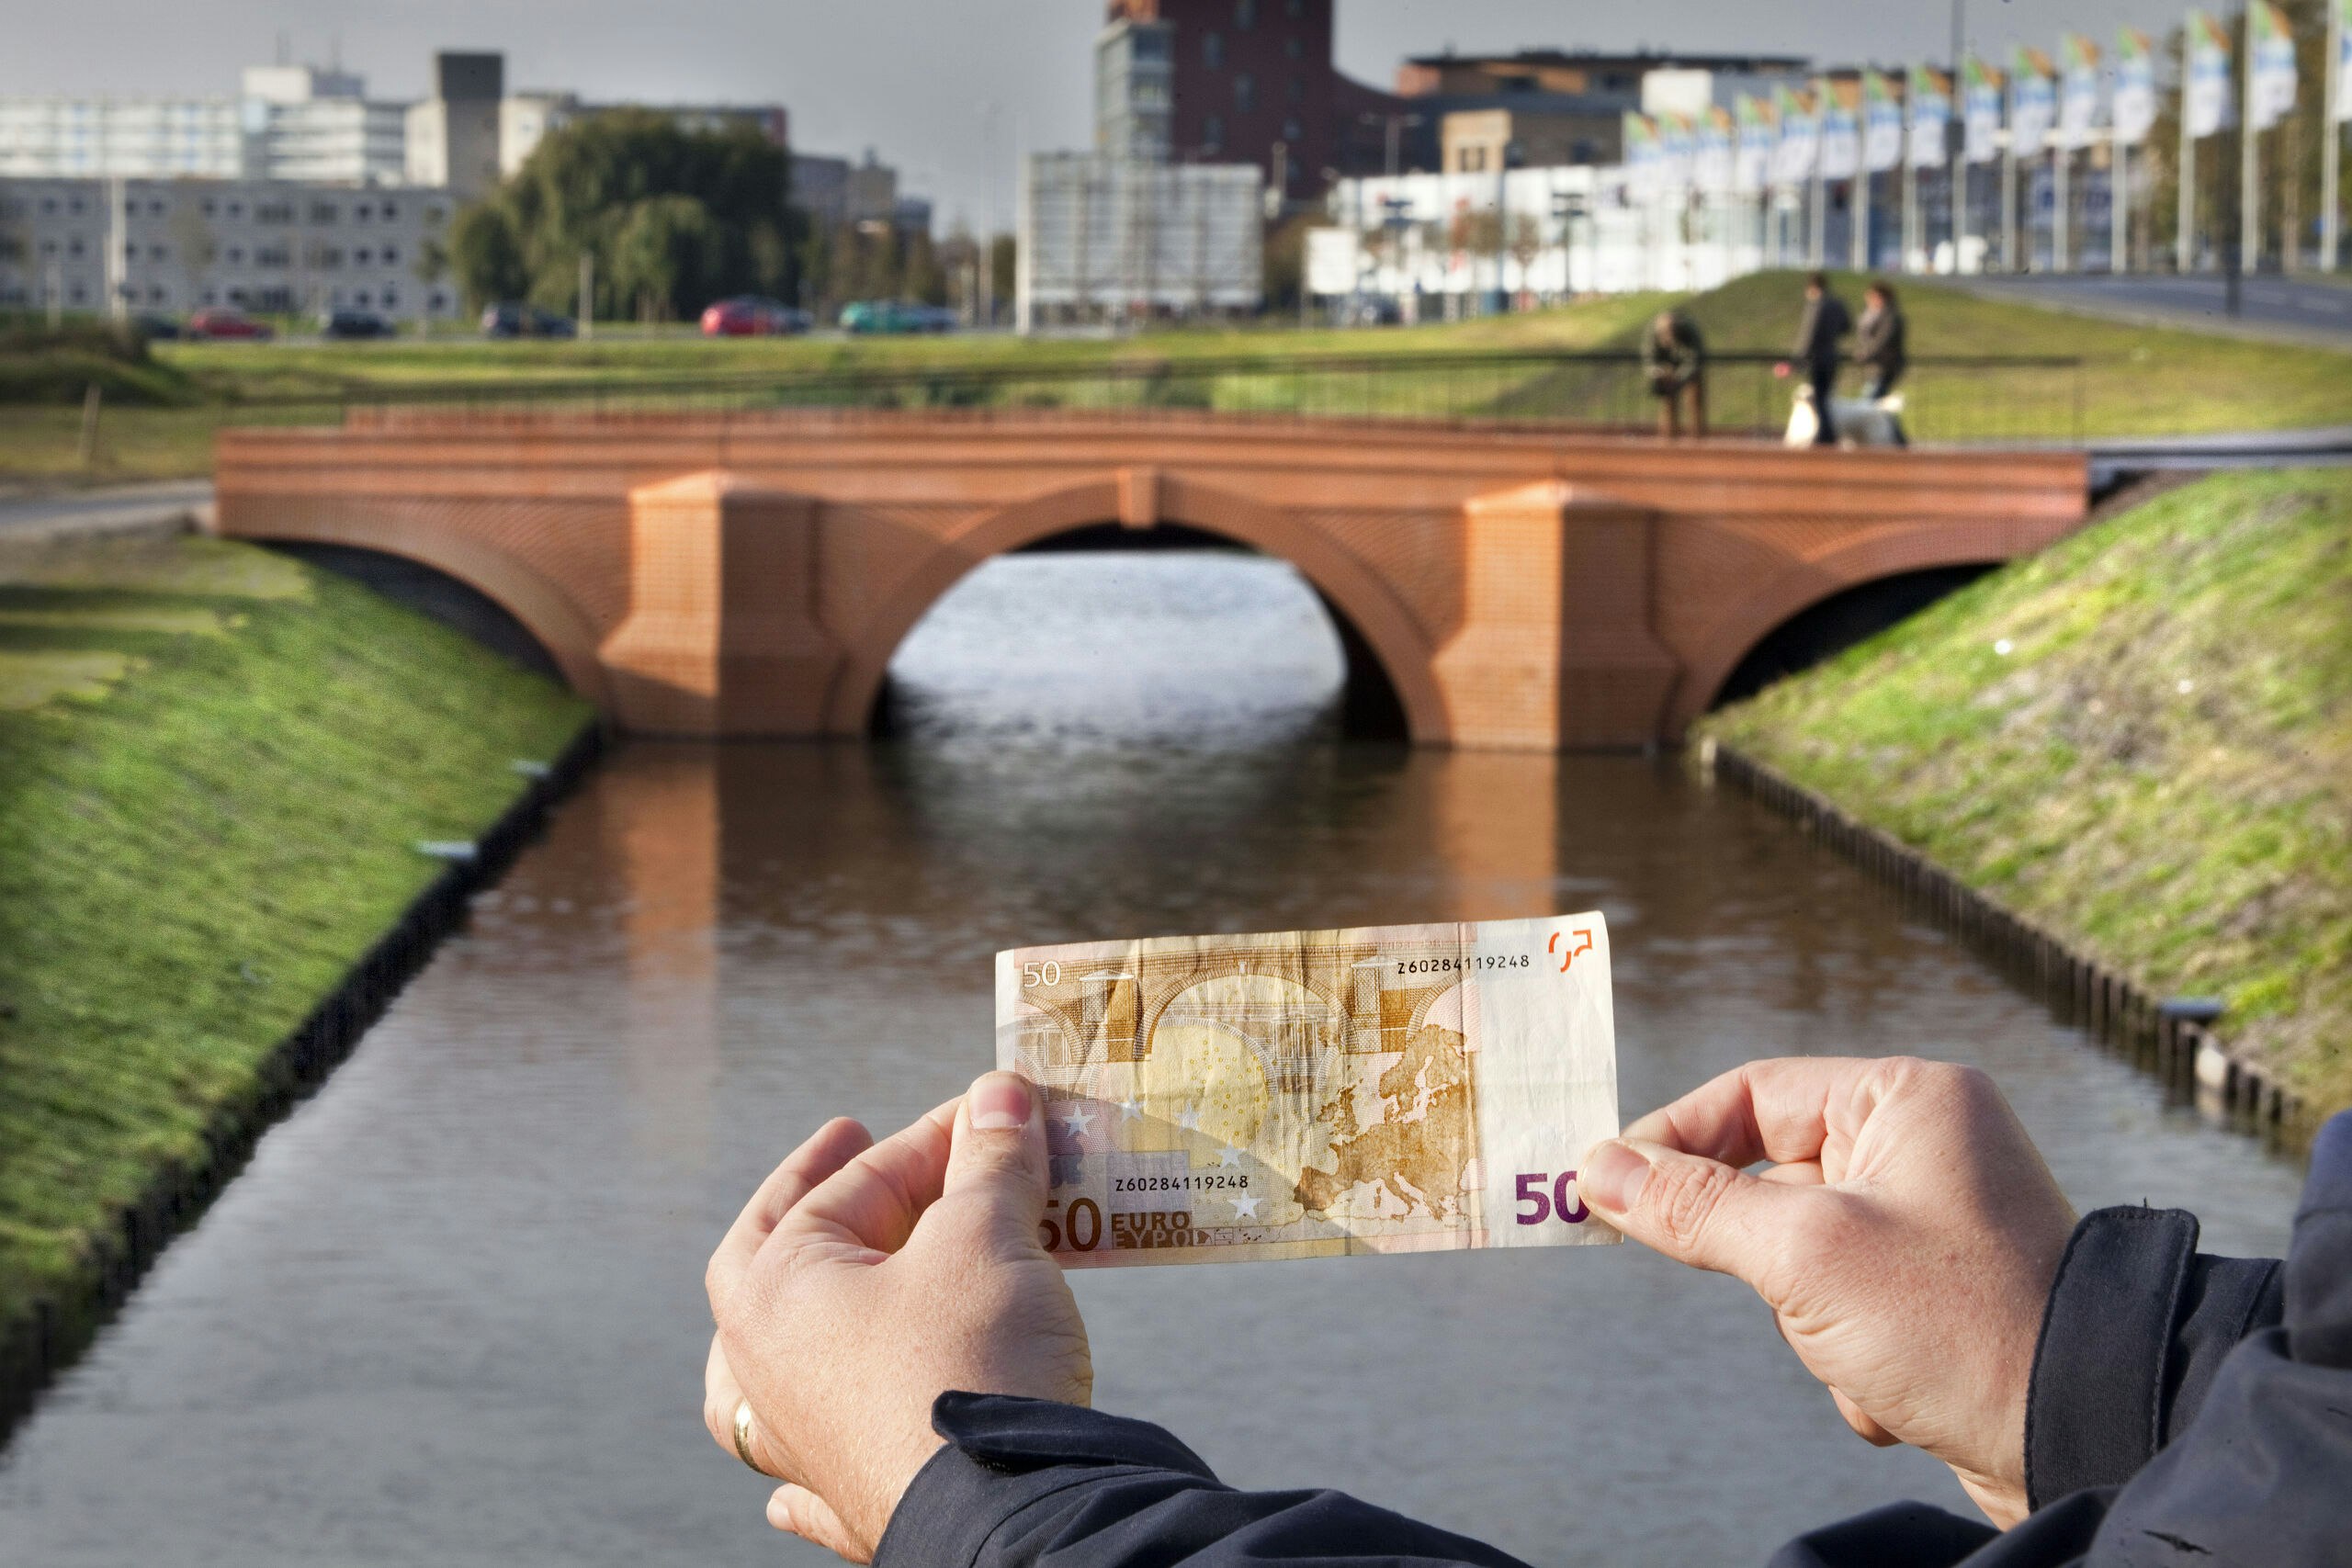 De bruggen op de zeven eurobiljetten zijn fictief, maar Spijkenisse bouwde de bruggen tussen 2011 en 2013 na.